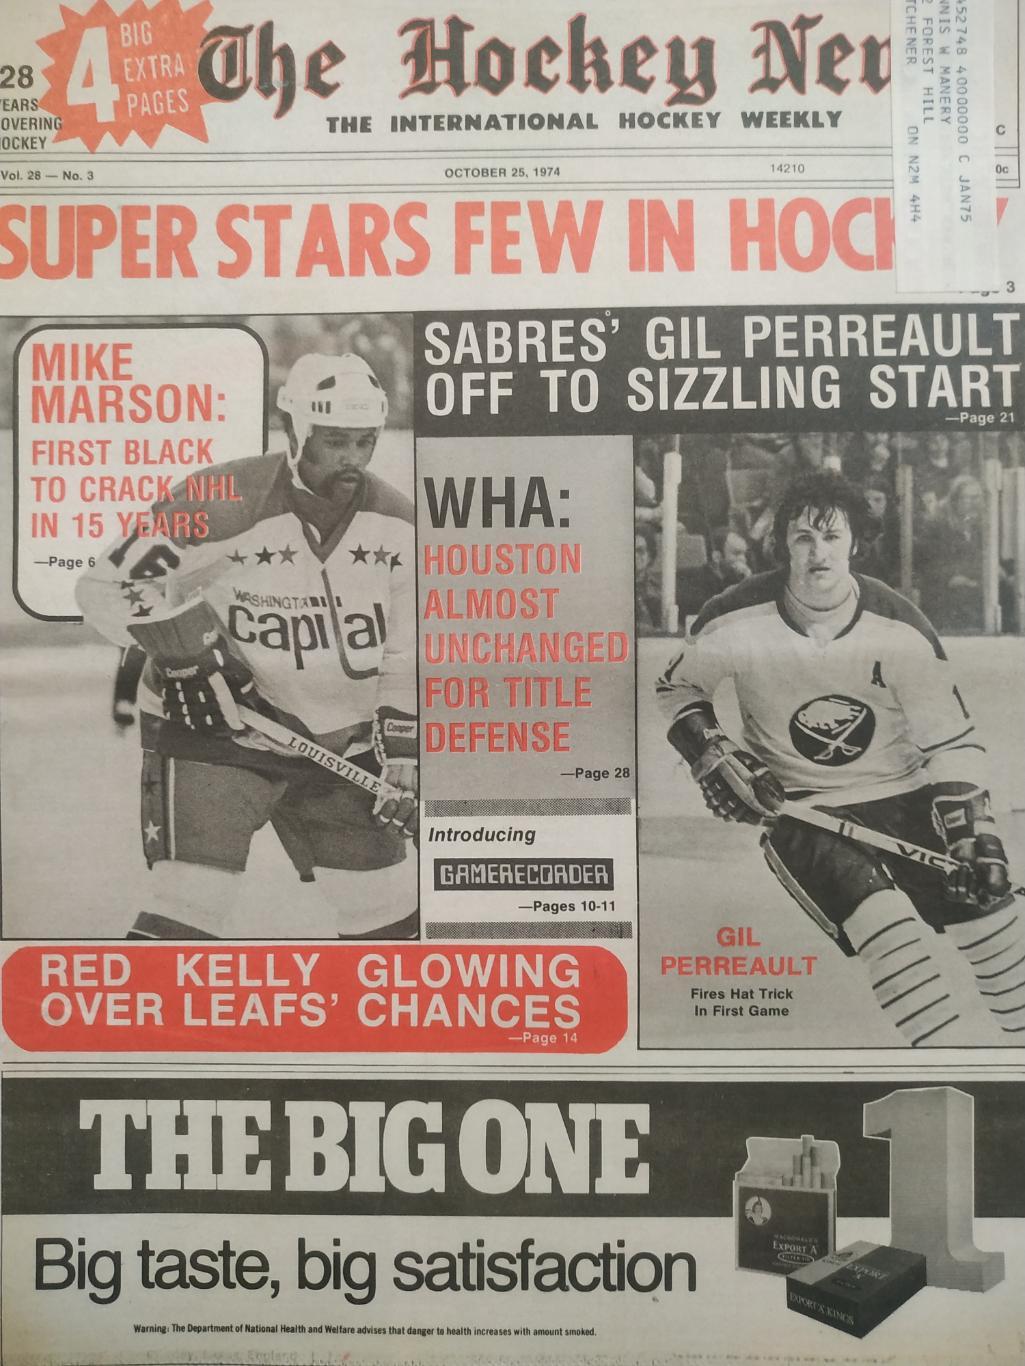 ХОККЕЙ ЖУРНАЛ ЕЖЕНЕДЕЛЬНИК НХЛ НОВОСТИ ХОККЕЯ OCT.25 1974 NHL THE HOCKEY NEWS